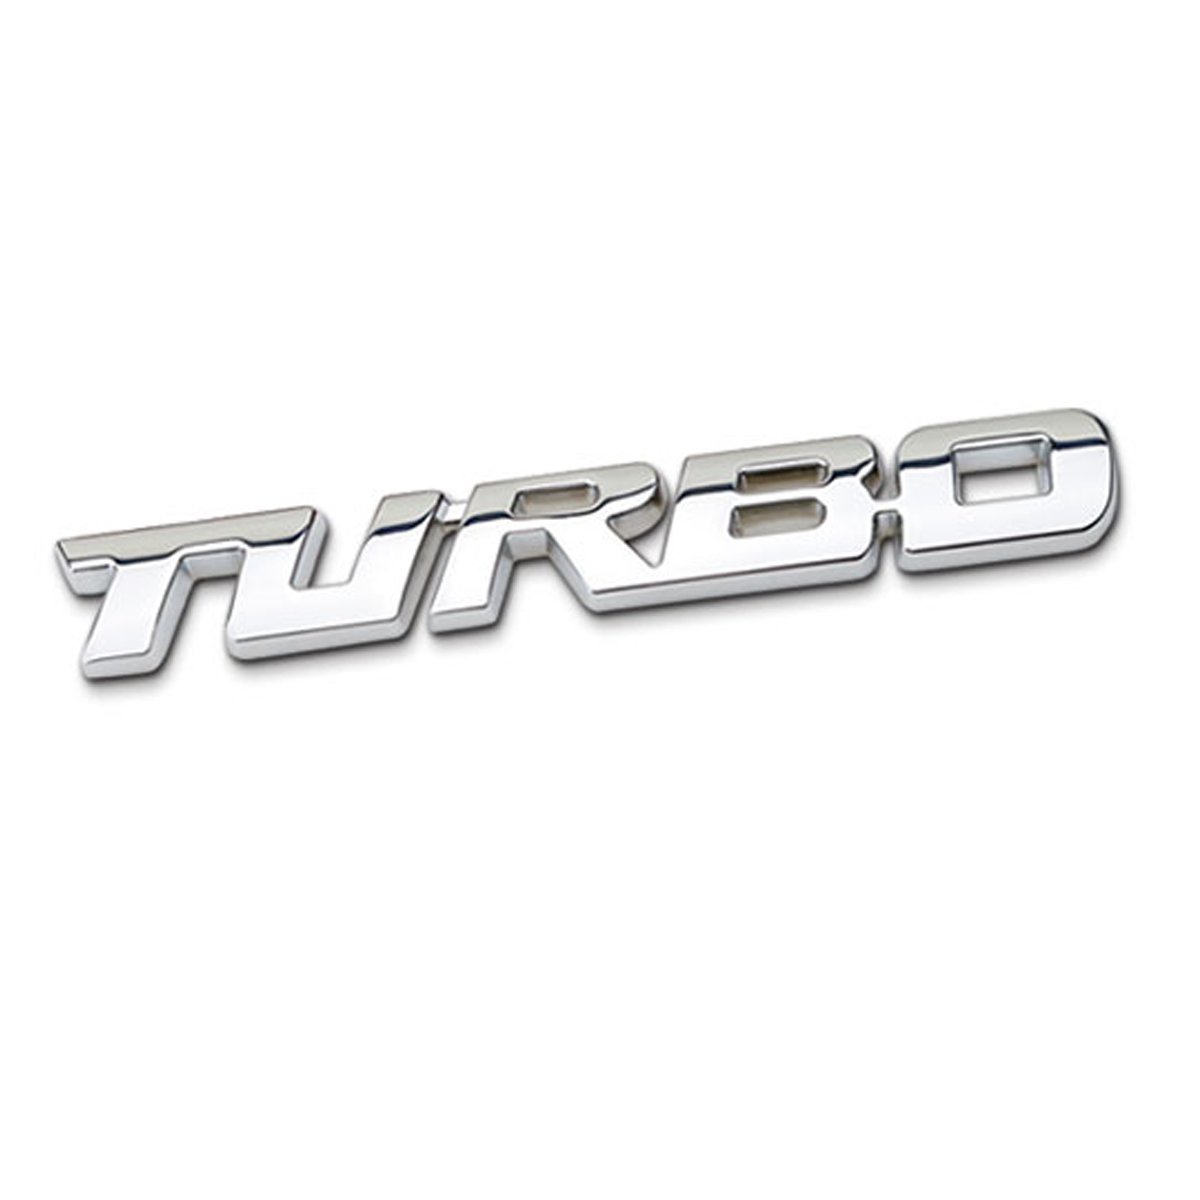 DSYCAR 3D Metall Auto Dekoration Metallkleber TURBO Lkw Auto Abzeichen Emblem Aufkleber für Universal Cars Moto Bike Auto Styling Dekorative Zubehör (TURBO-Silber) von Dsycar